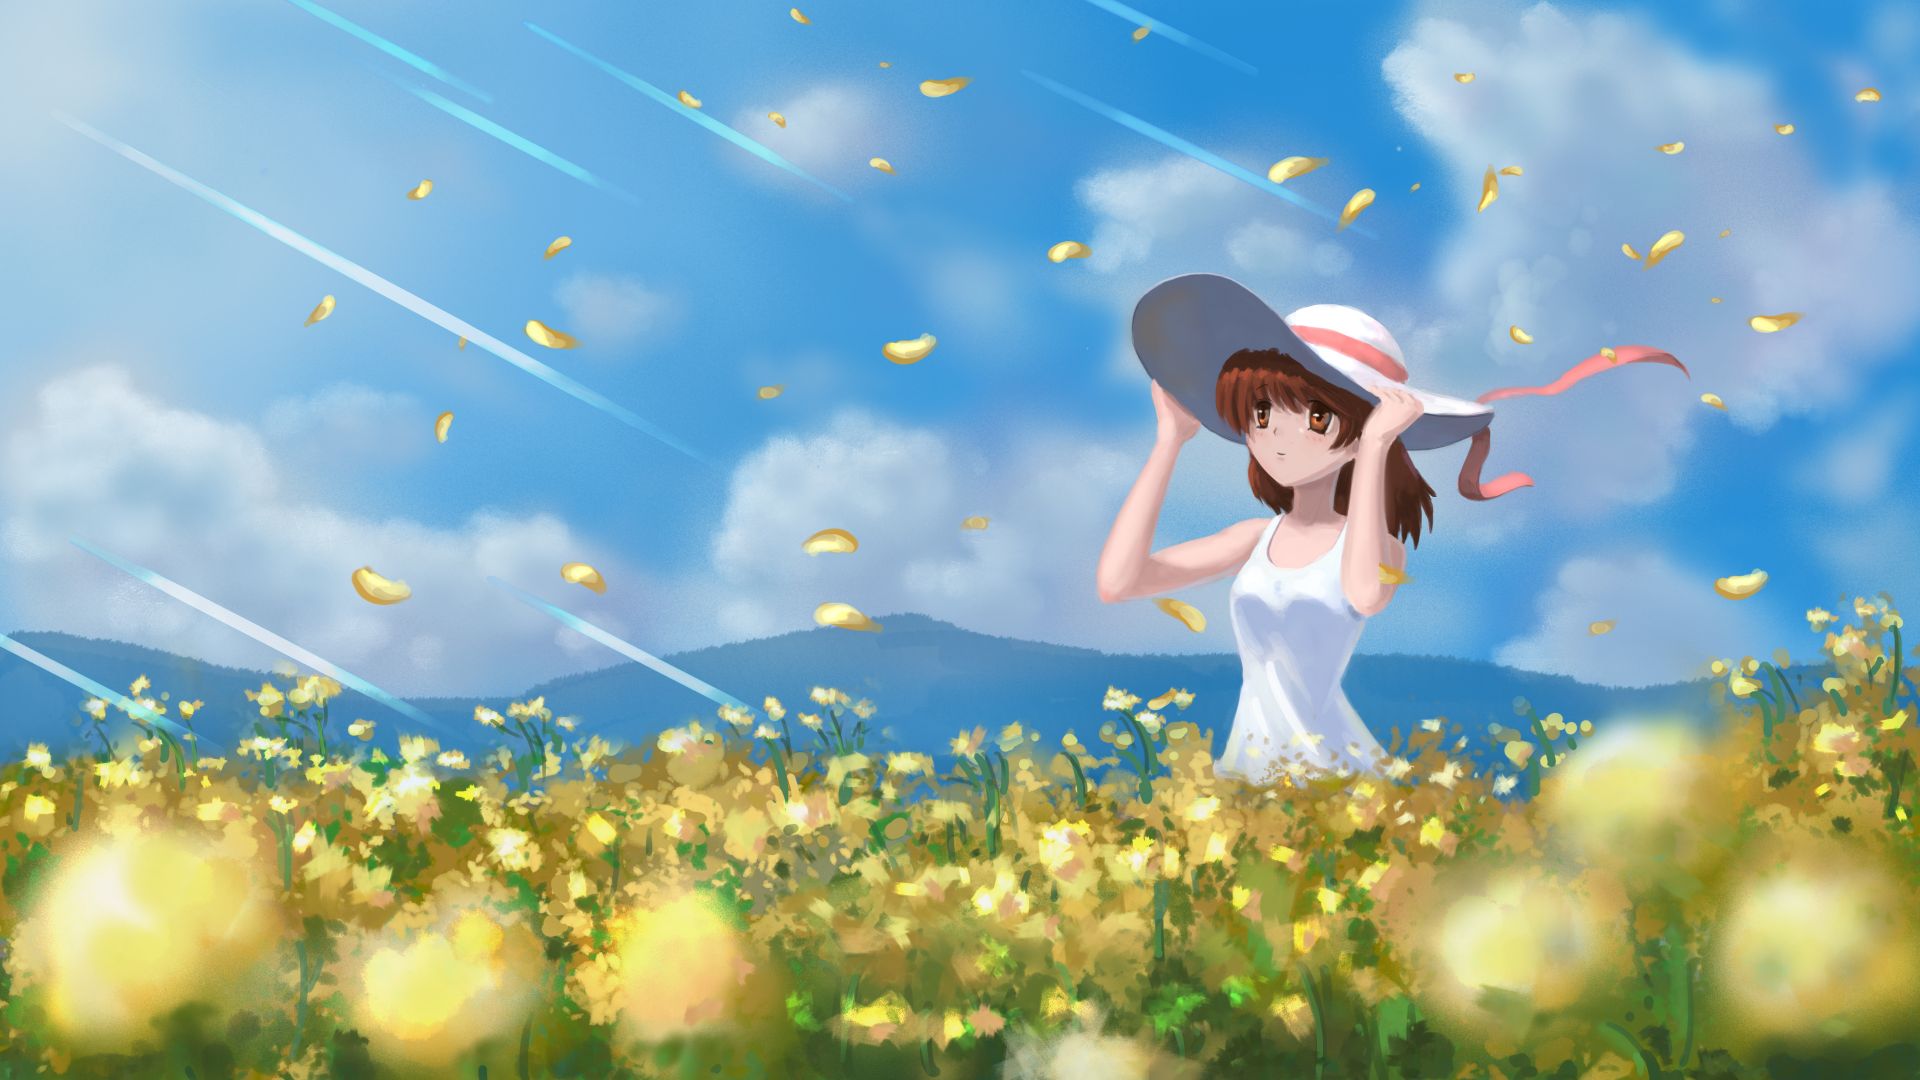 Wallpaper Cute, anime girl, outdoor, meadow, original